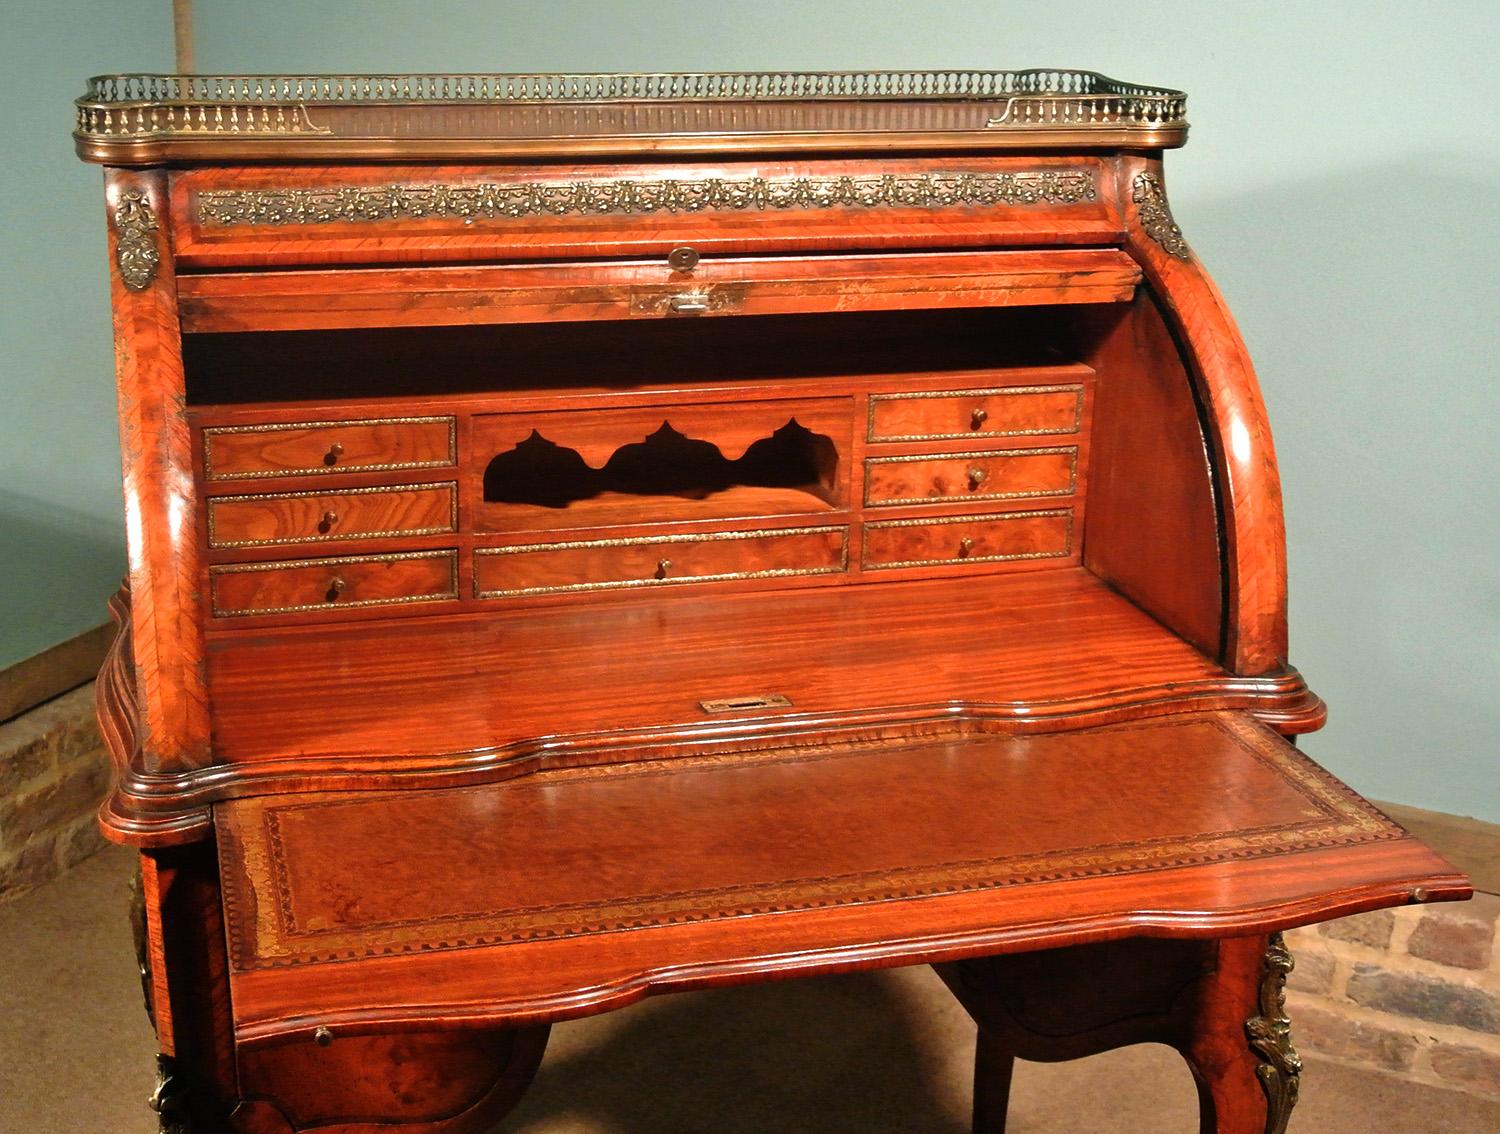 Viktorianisches Bureau de Dame oder Schreibtisch aus Wurzelnussholz, um 1890 (19. Jahrhundert)